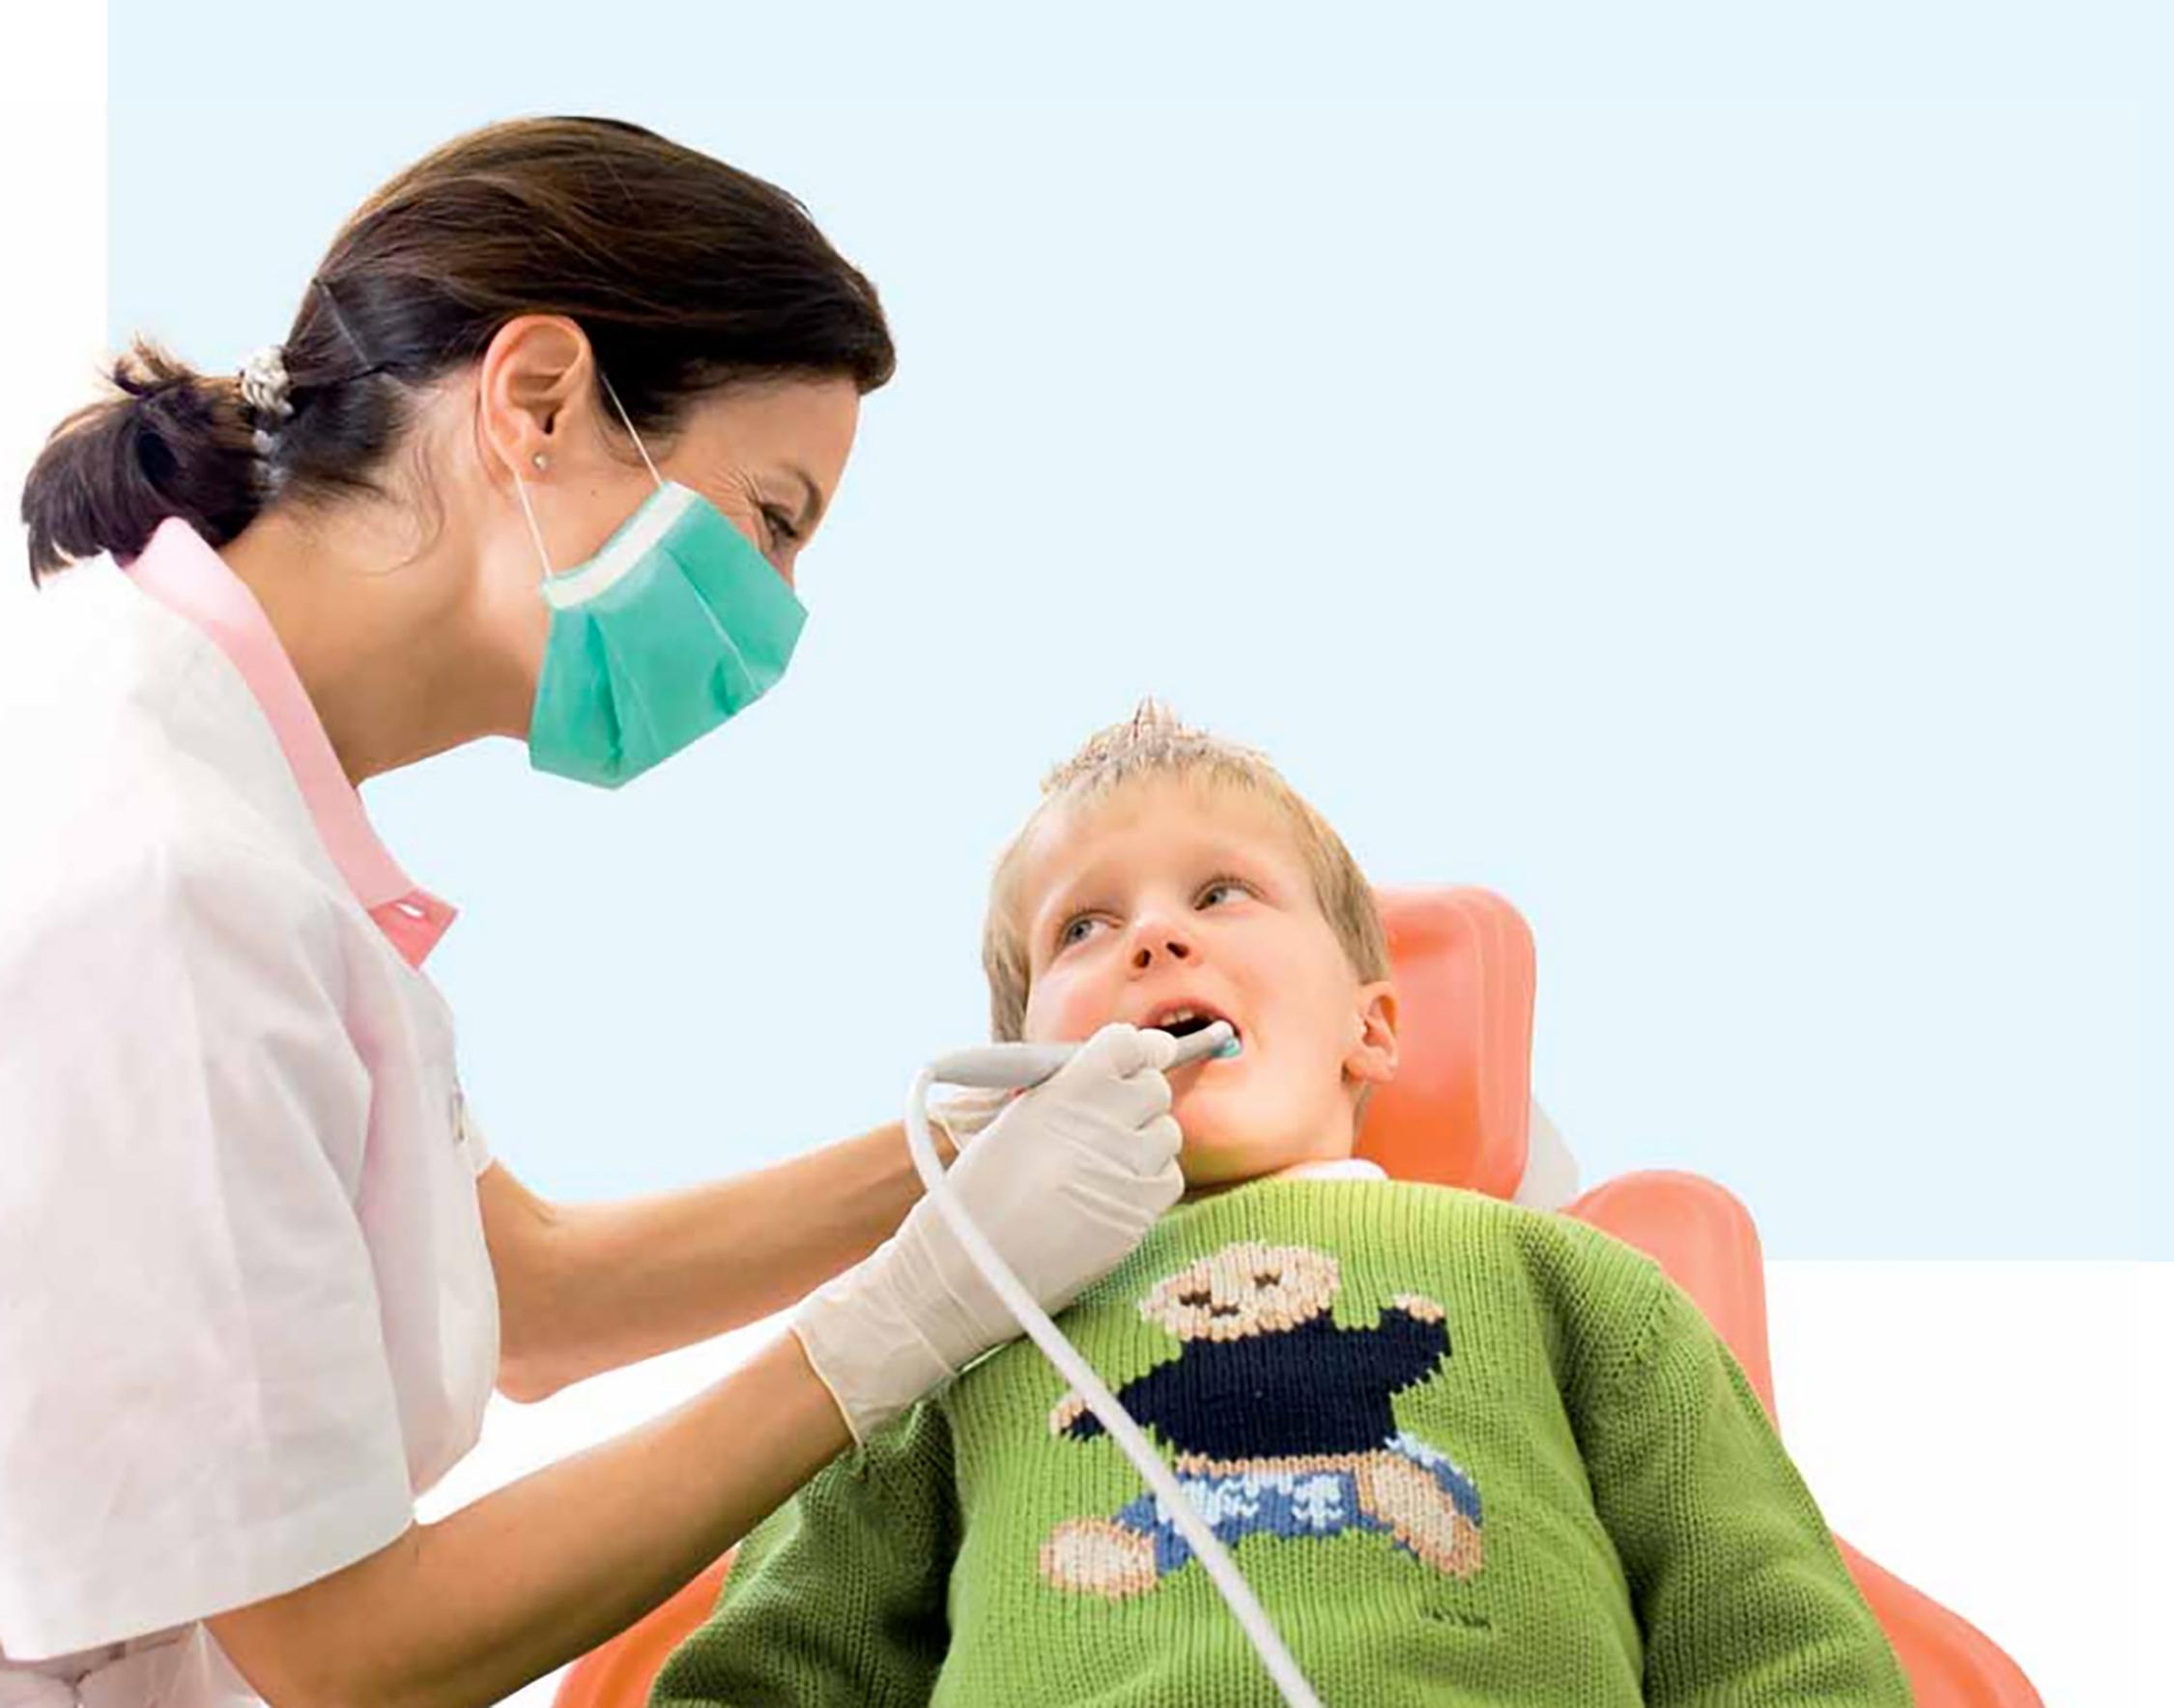 Maffei Medical | L'ozonoterapia, una terapia naturale contro la carie